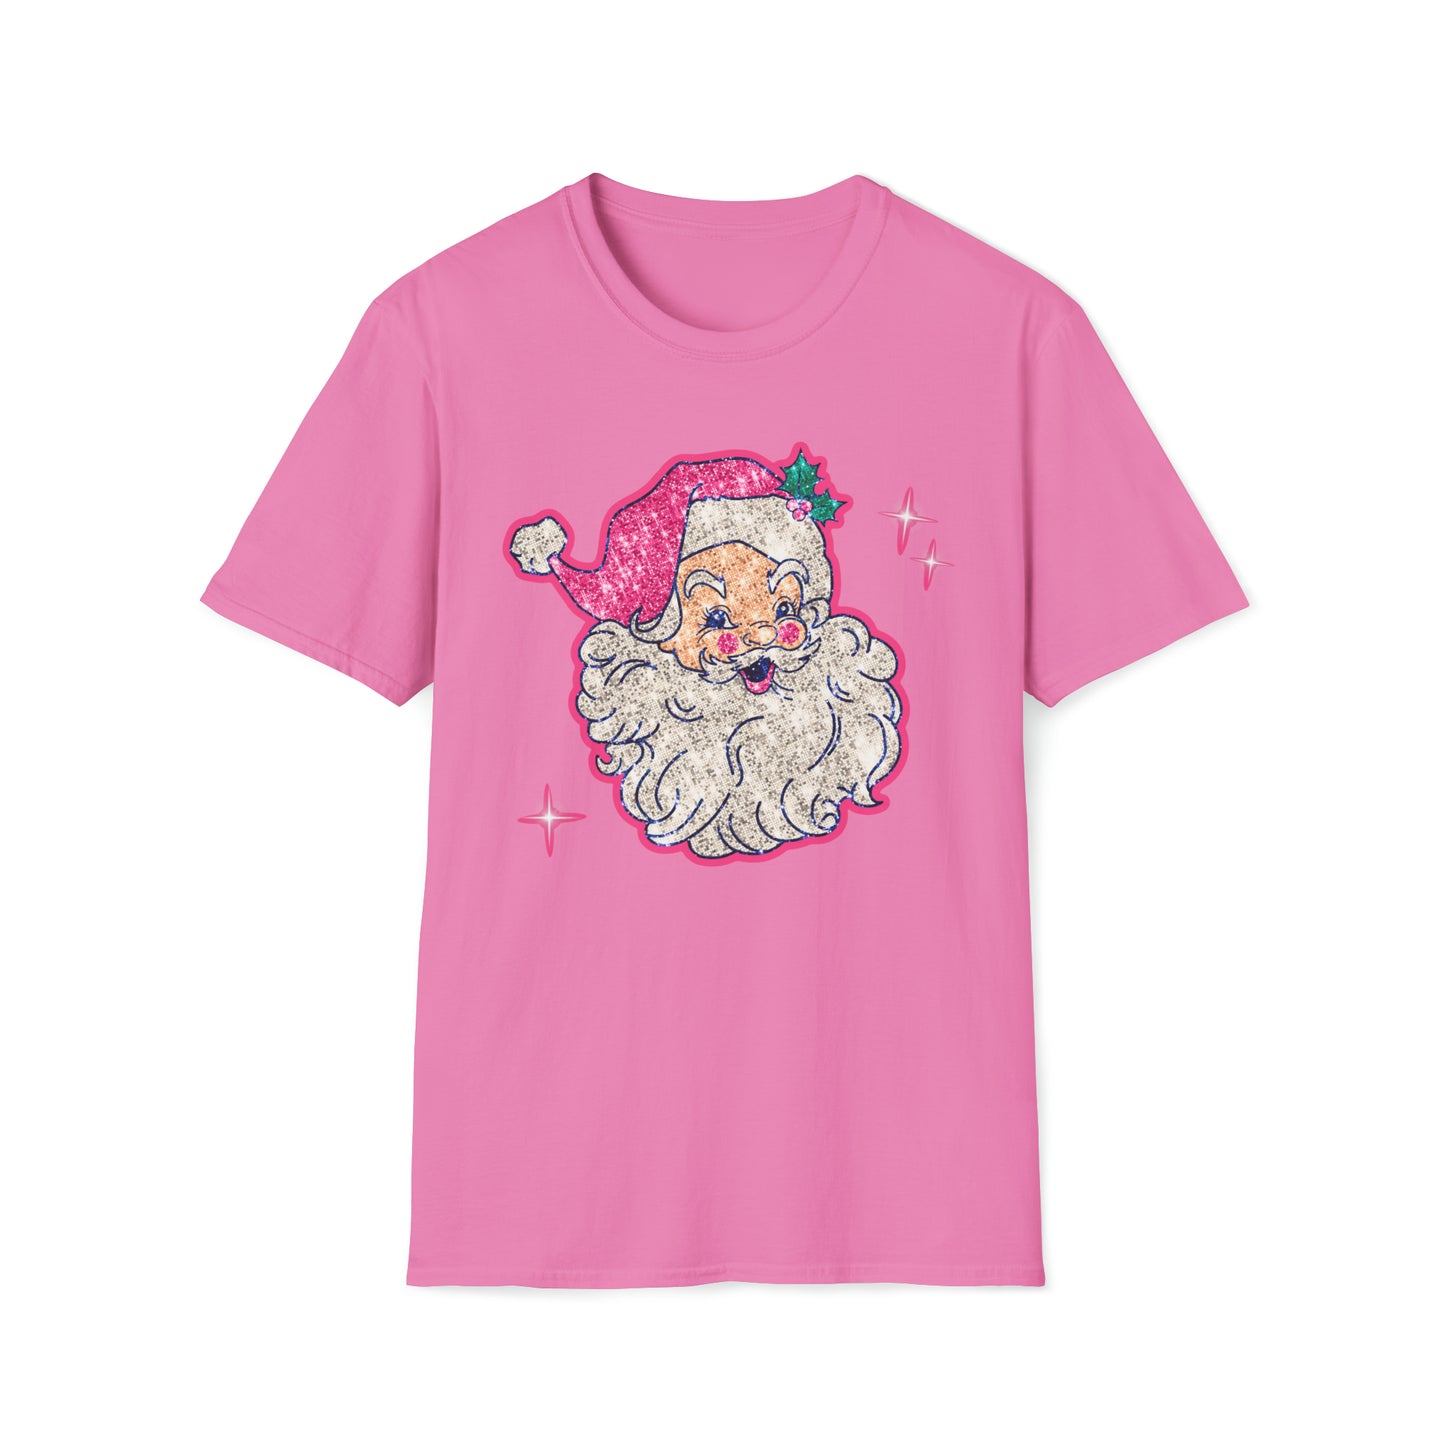 Santa Baby - Softstyle T-Shirt